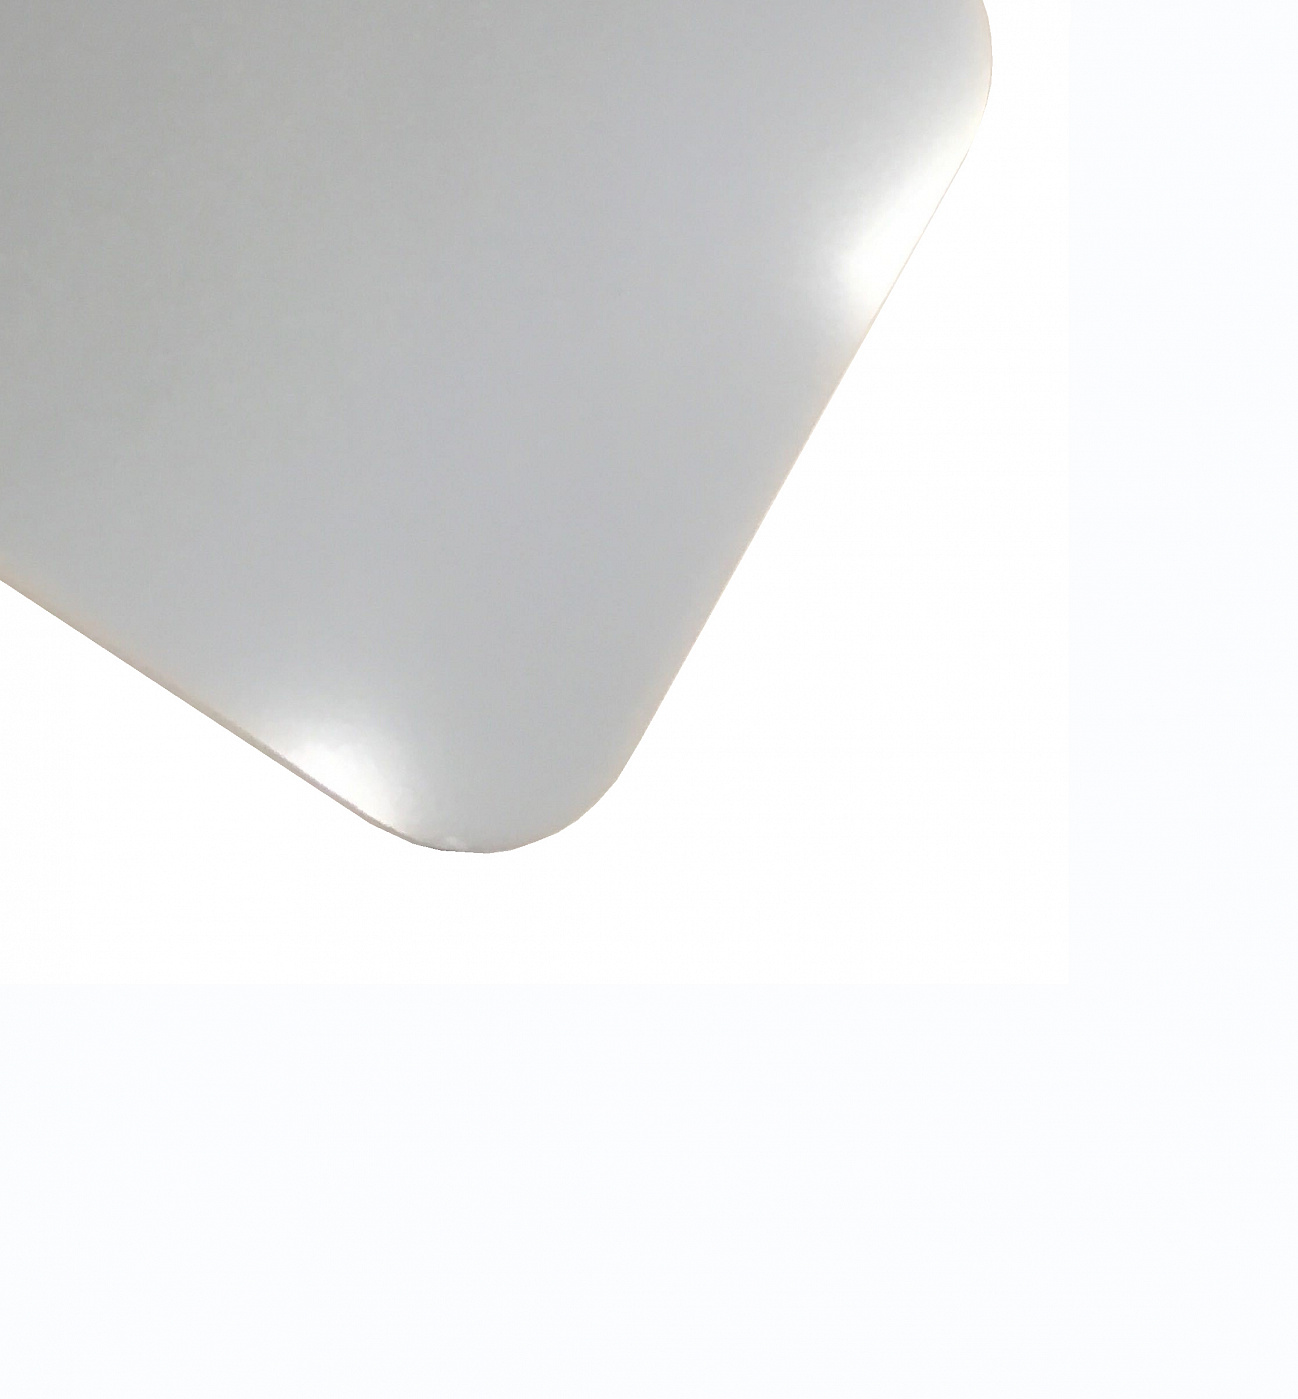 Планшет для пленэра из оргстекла 3 мм, под лист размера А4, цвет белый Dec-9082016 - фото 1